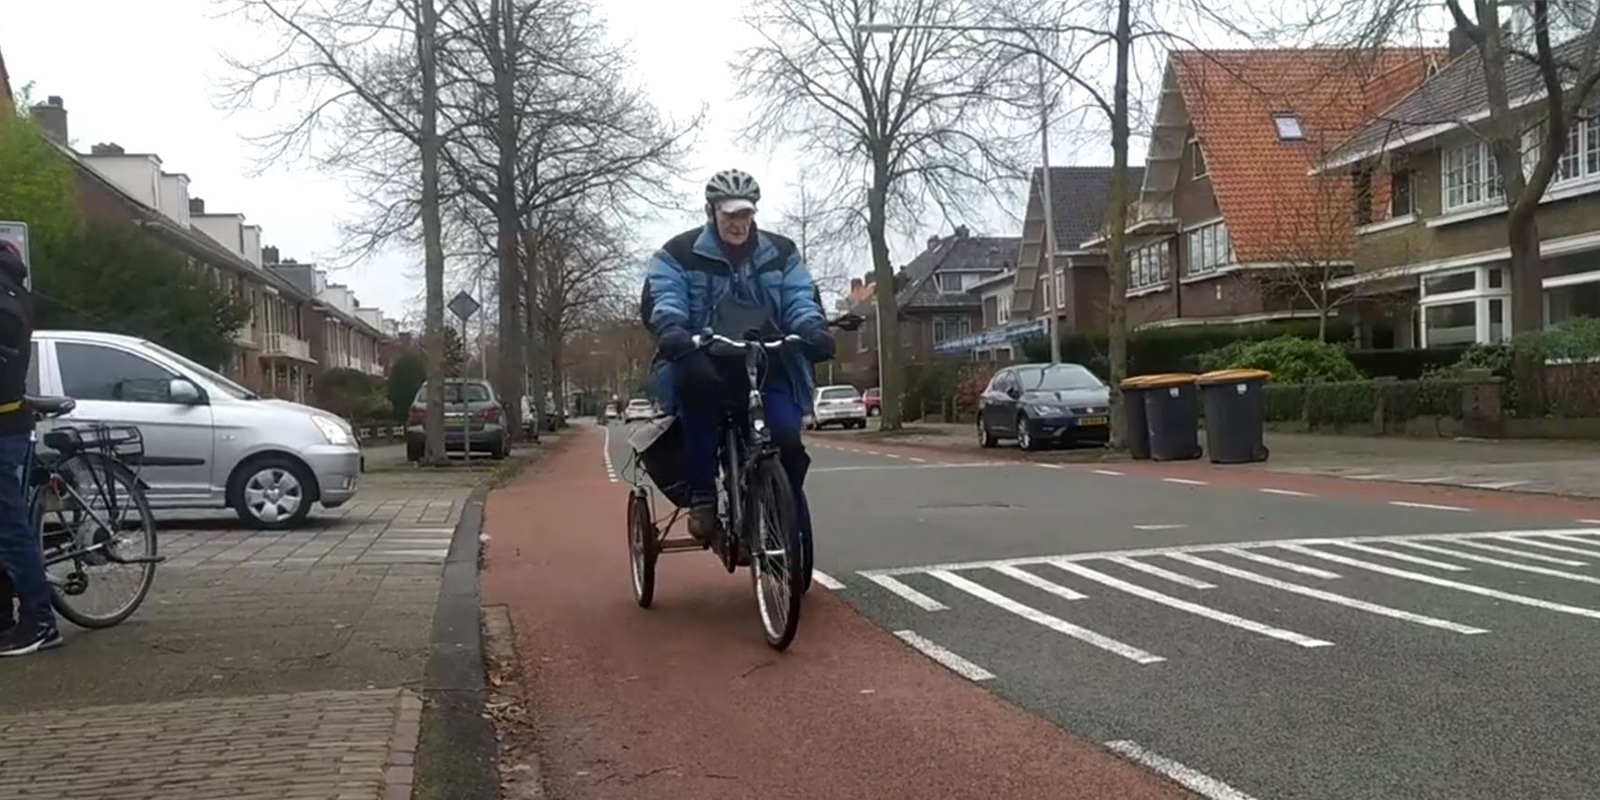 De 90-jarige Peter op zijn driewieler op de heenweg naar Het Socrateshuis in Apeldoorn, waar zijn vrouw vanwege dementie woont. Zeventien kilometer heen en zeventien kilometer terug, en dat elke dag.